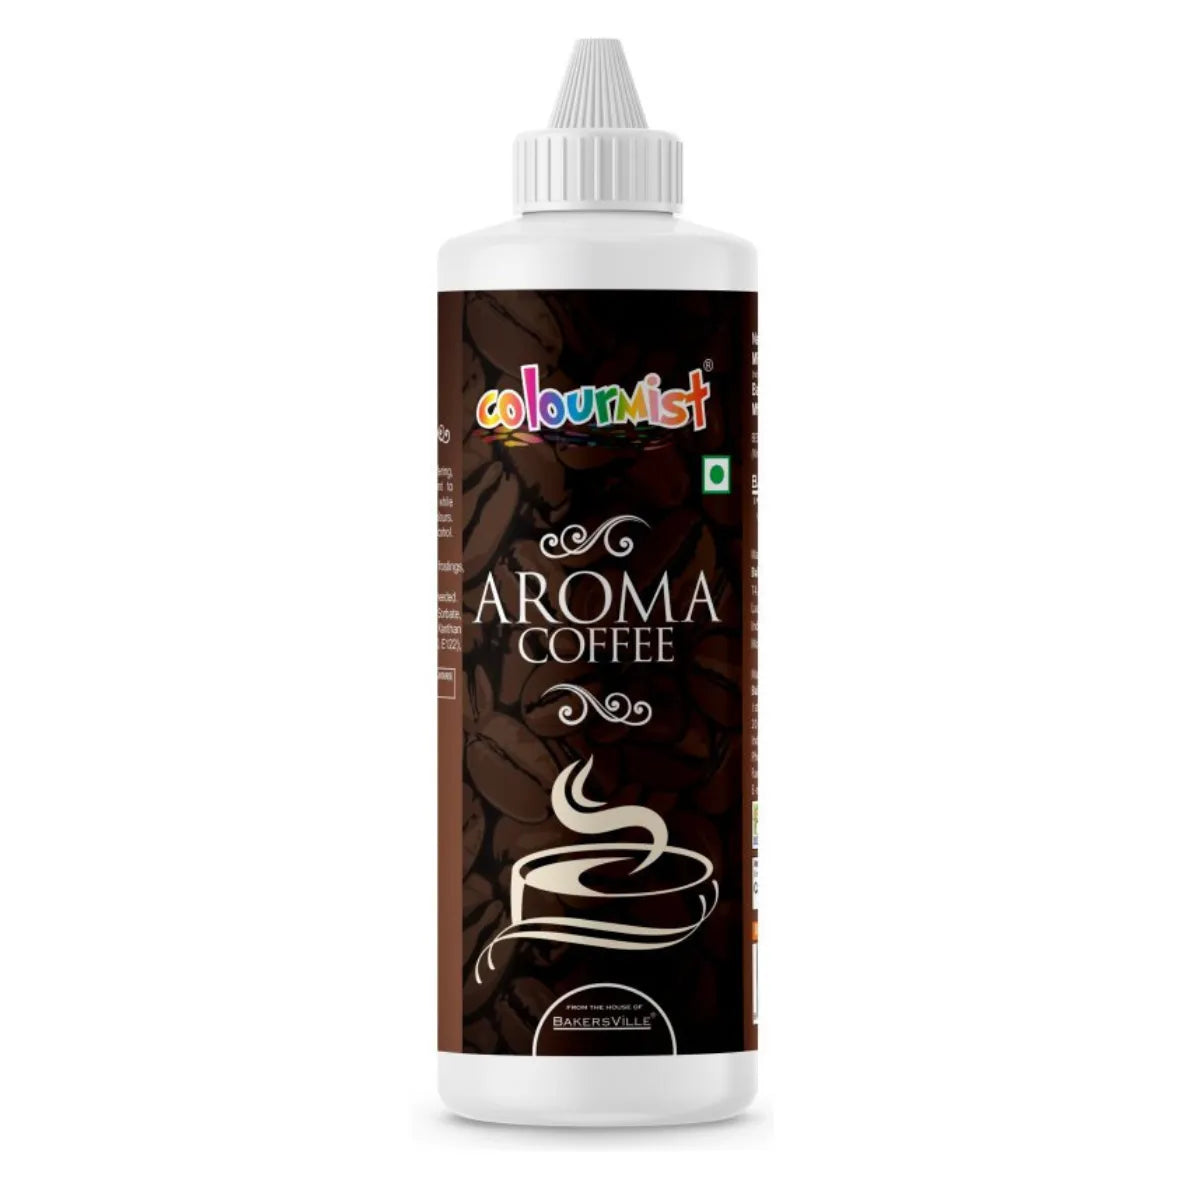 Colourmist Coffee Aroma, 200 gram - thebakingtools.com